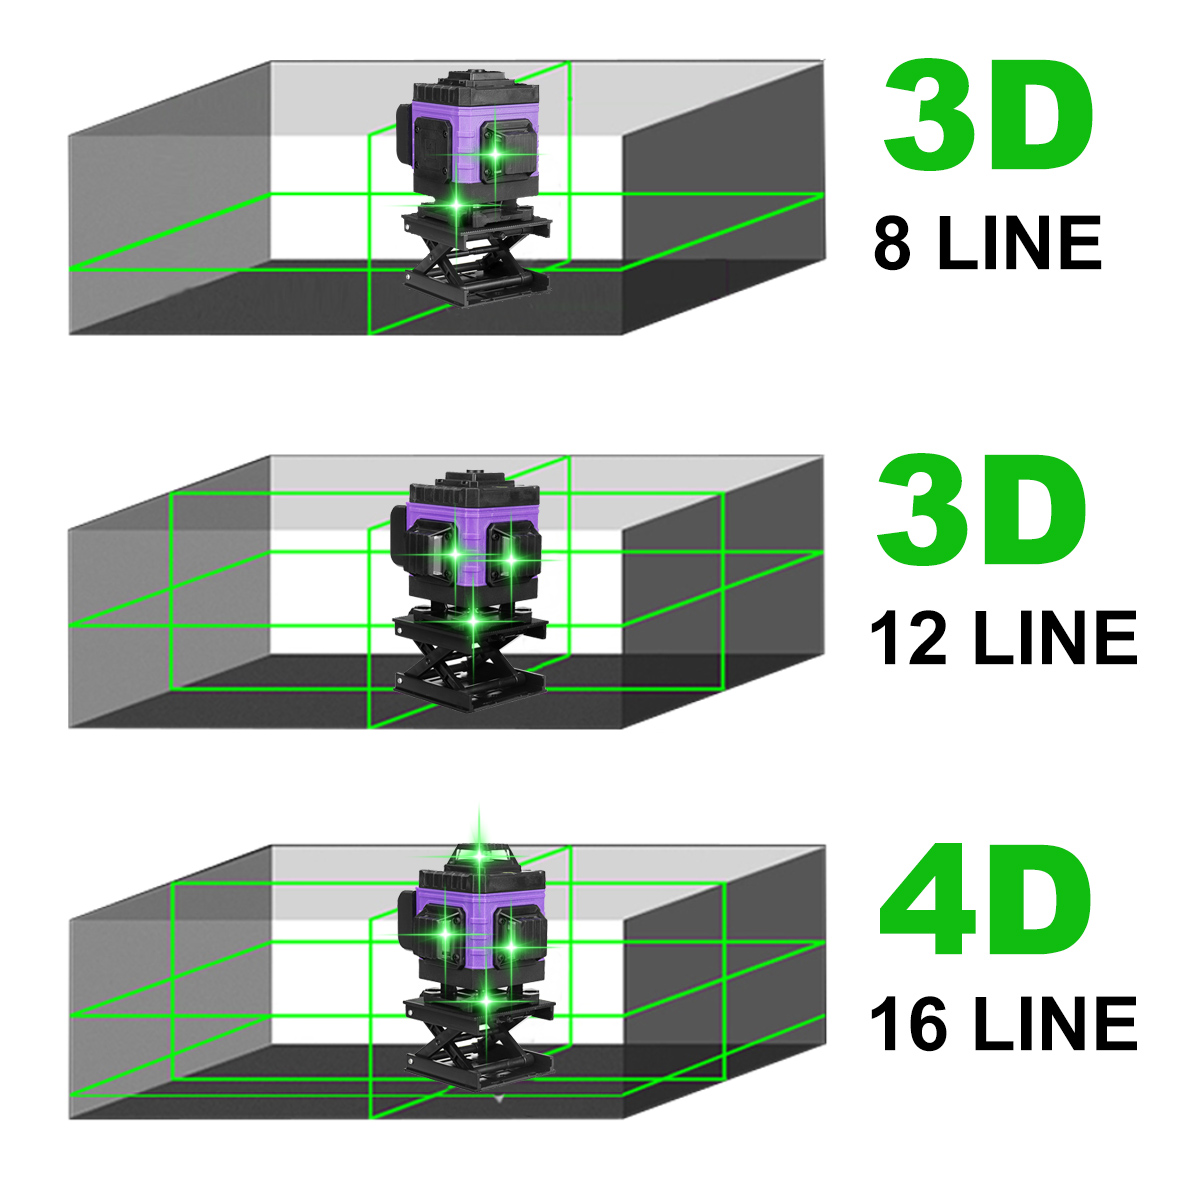 81216-Lines-4D-360deg-Horizontal-Vertical-Cross-Green-Light-Laser-Level-Self-Leveling-Measure-Super--1877844-3